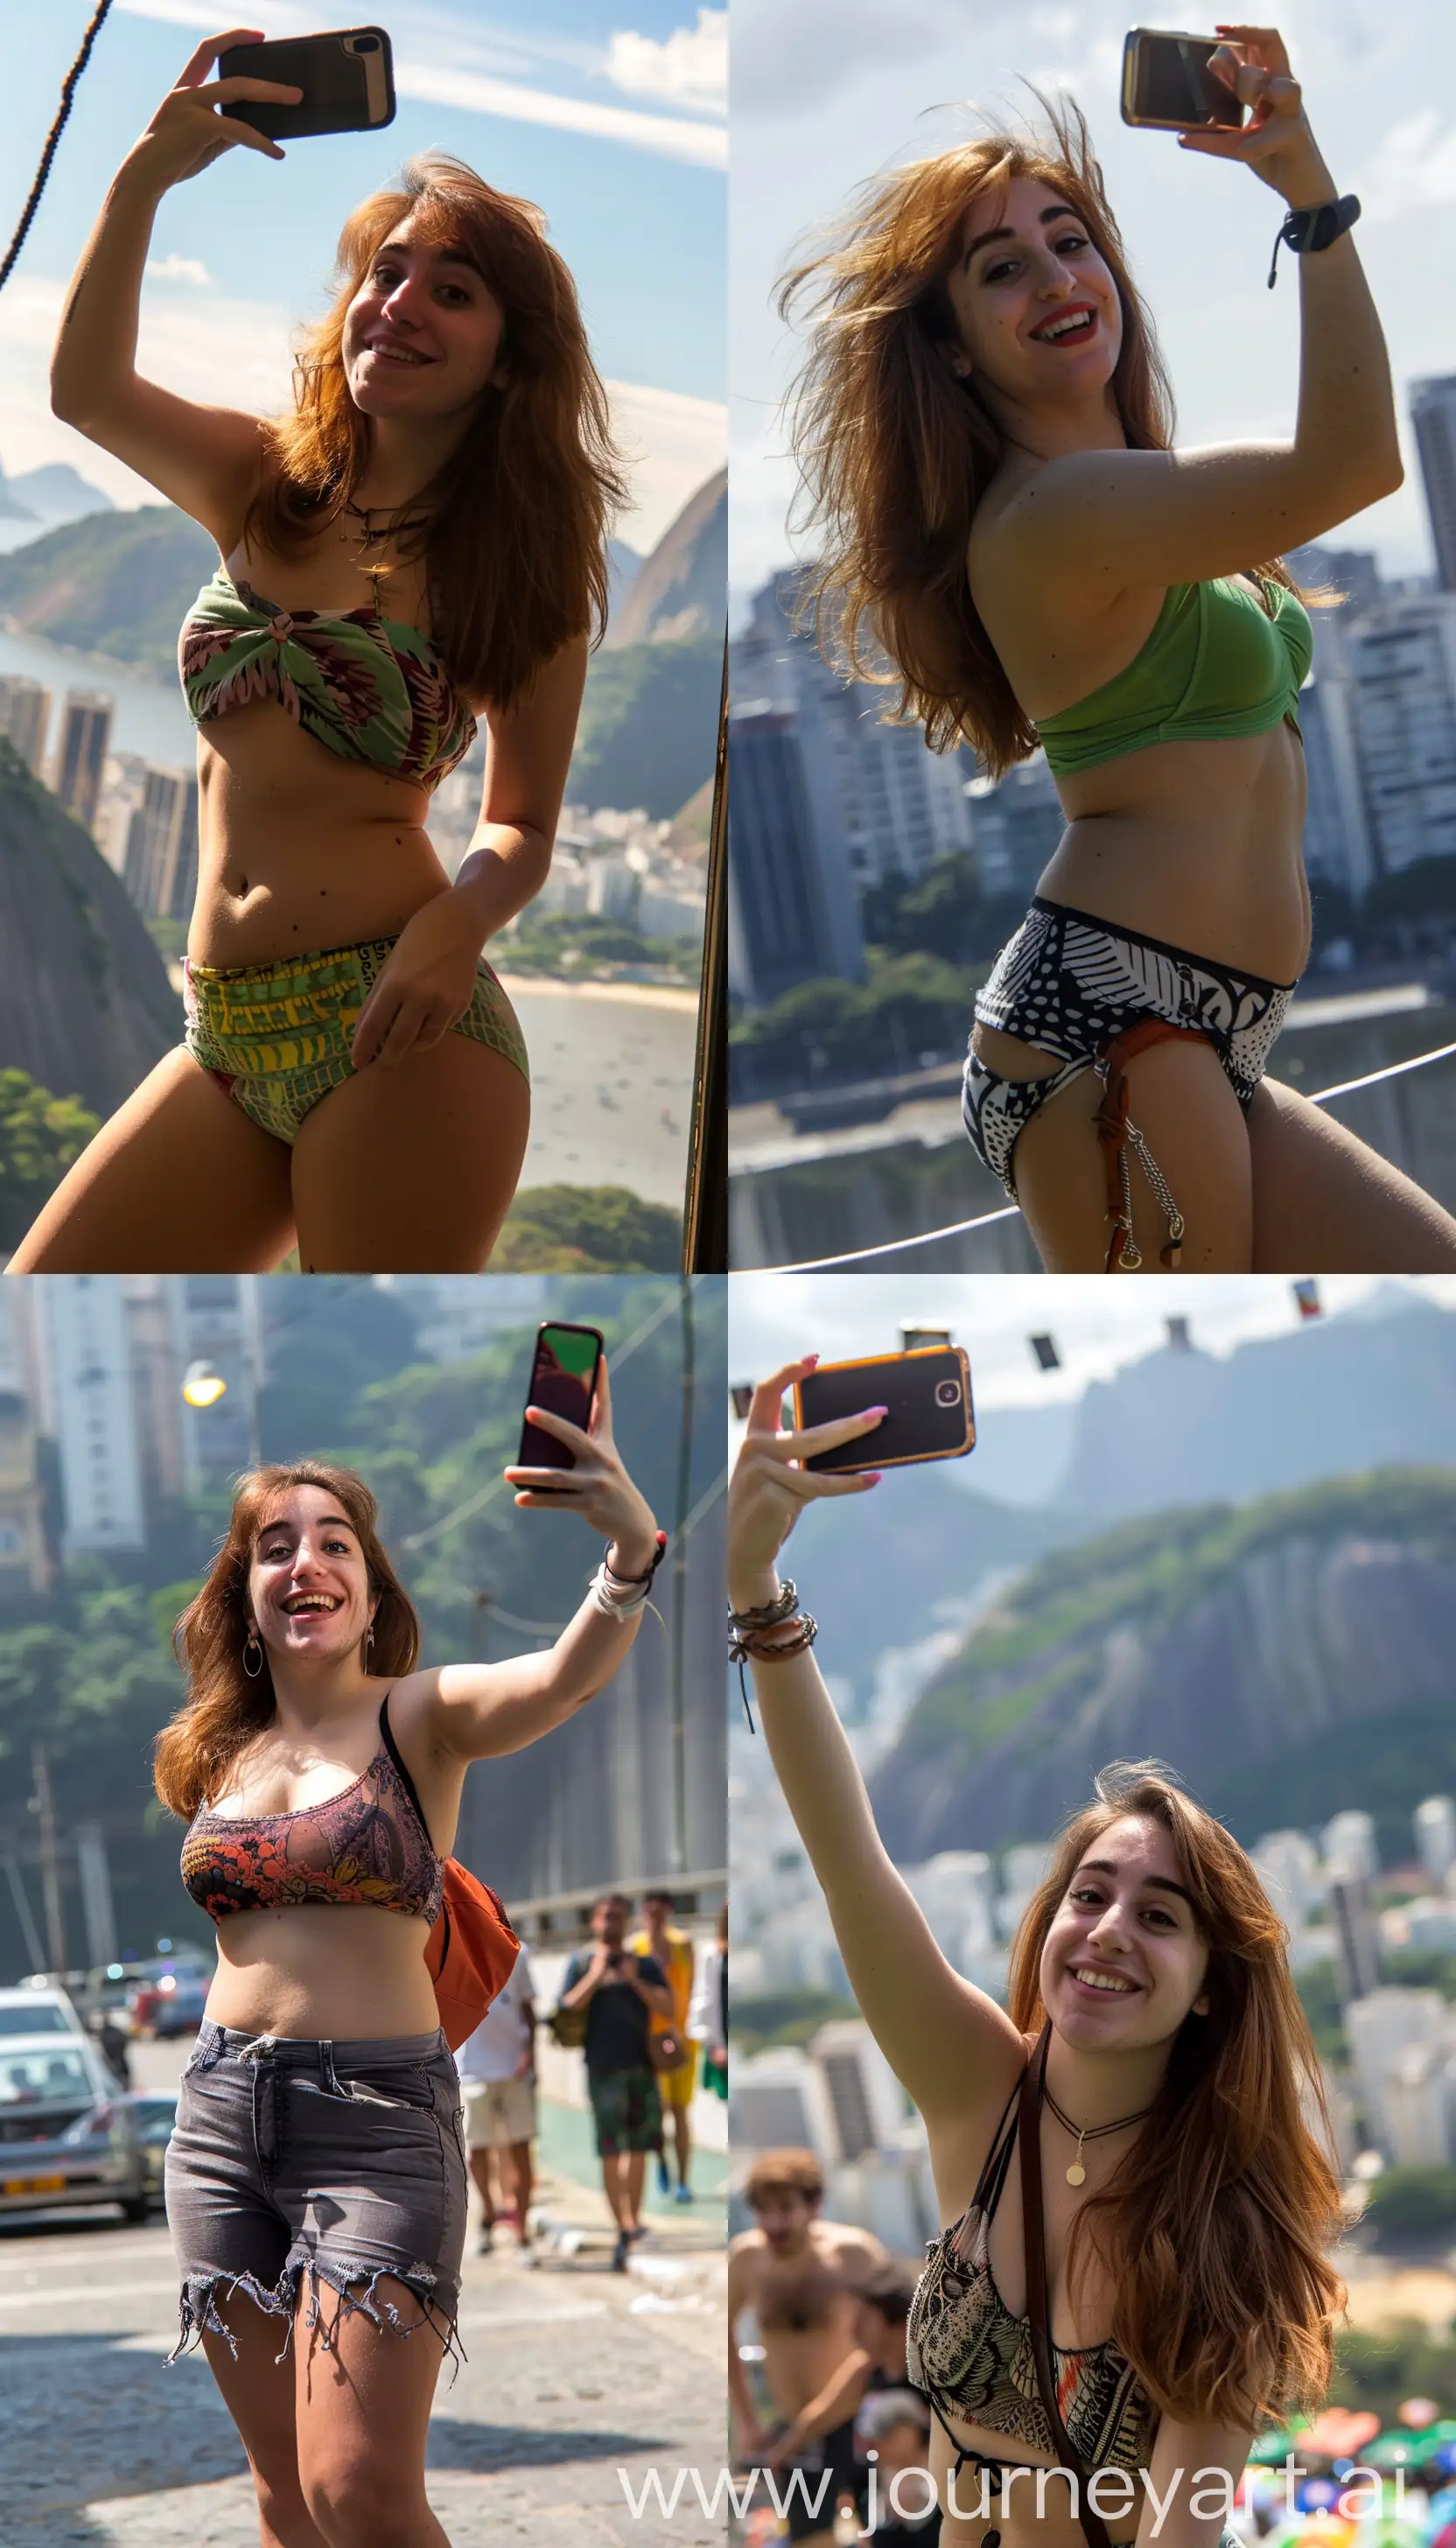 Woman-Taking-Selfie-in-Rio-de-Janeiro